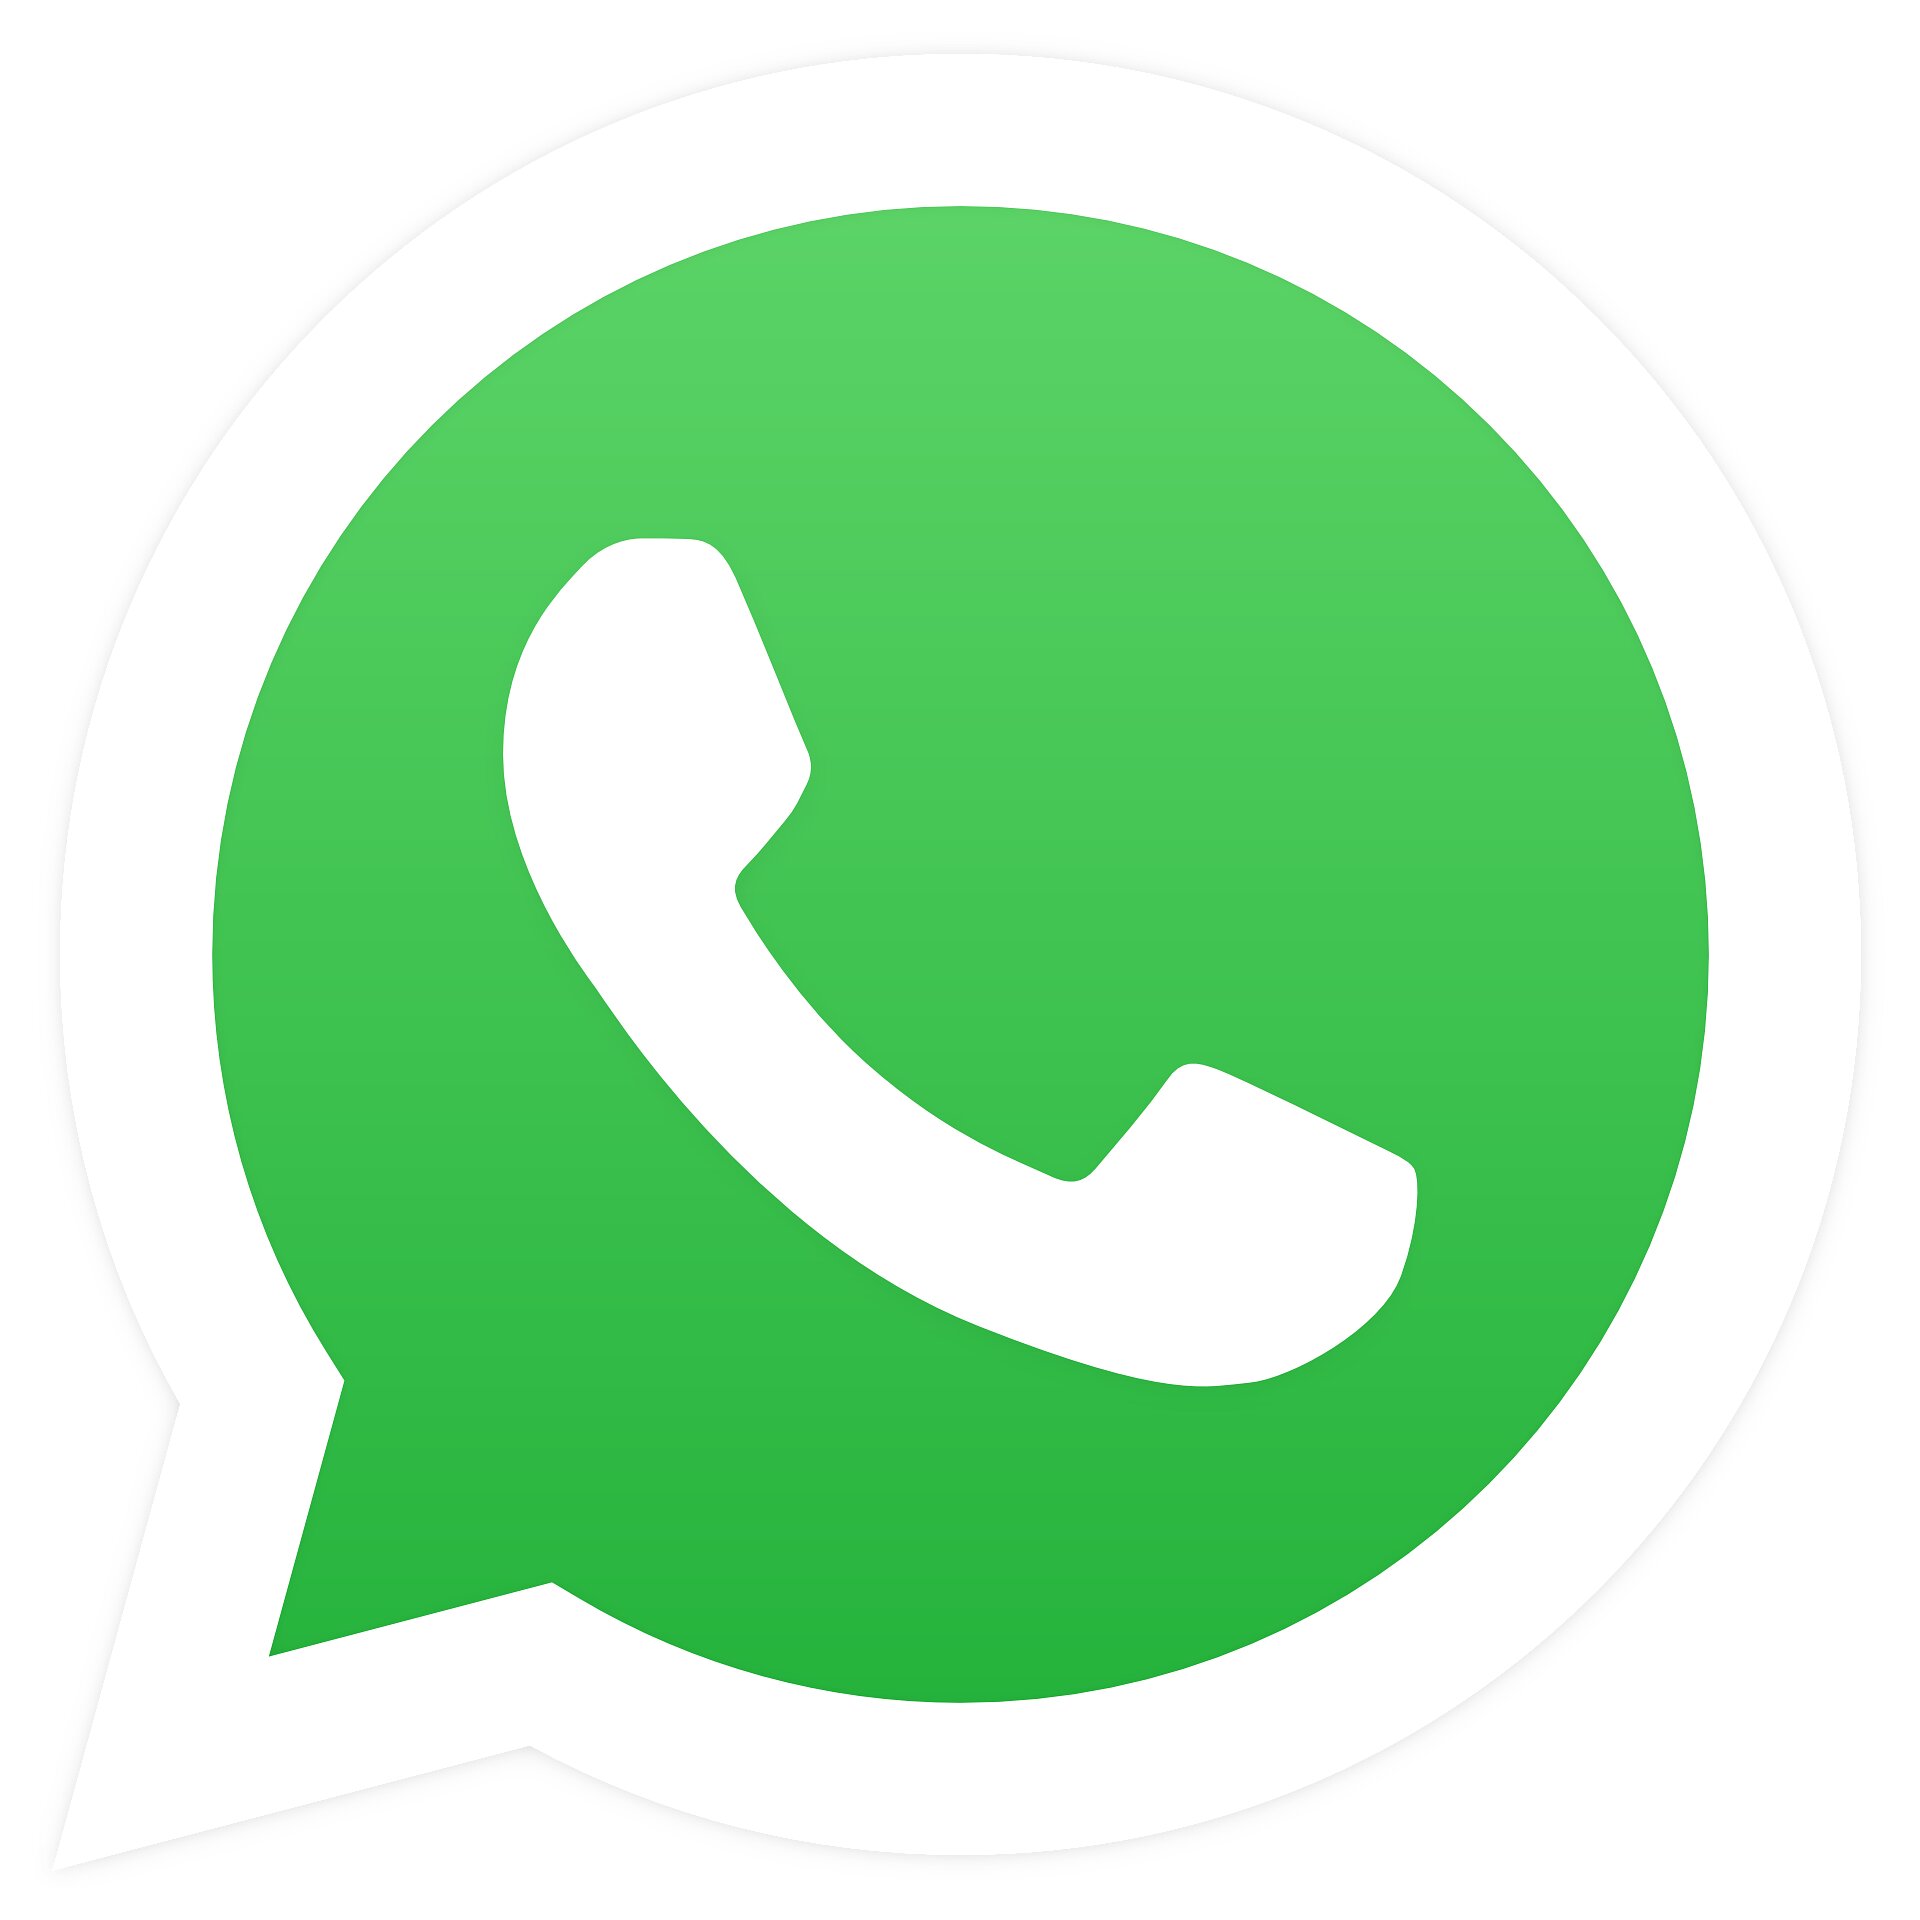 Consumer group lodges EU complaint against WhatsApp